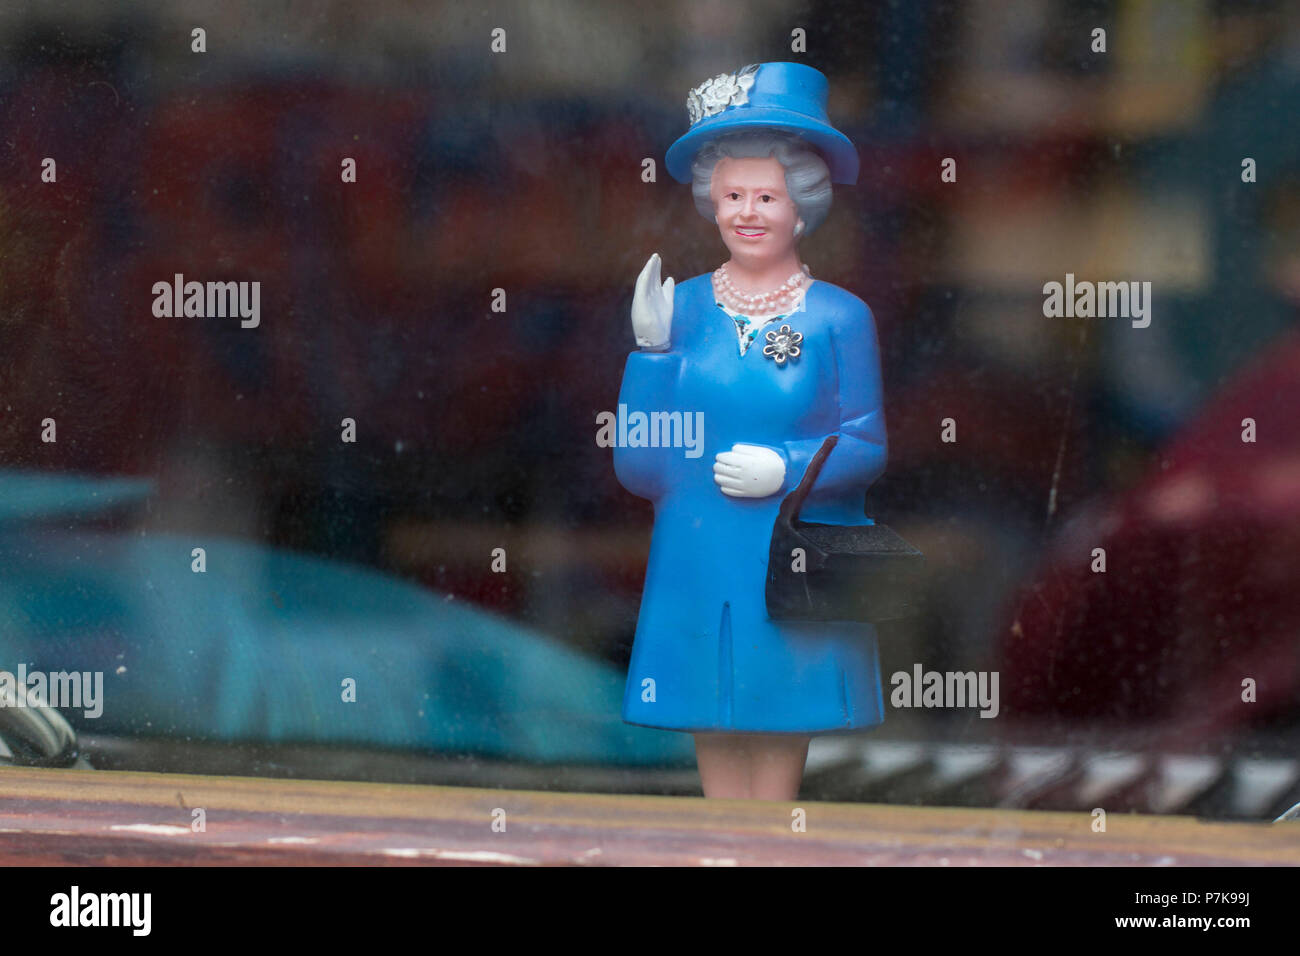 Sventolando la monarchia, la regina inglese come una bambola in vetrina di un negozio. Foto Stock